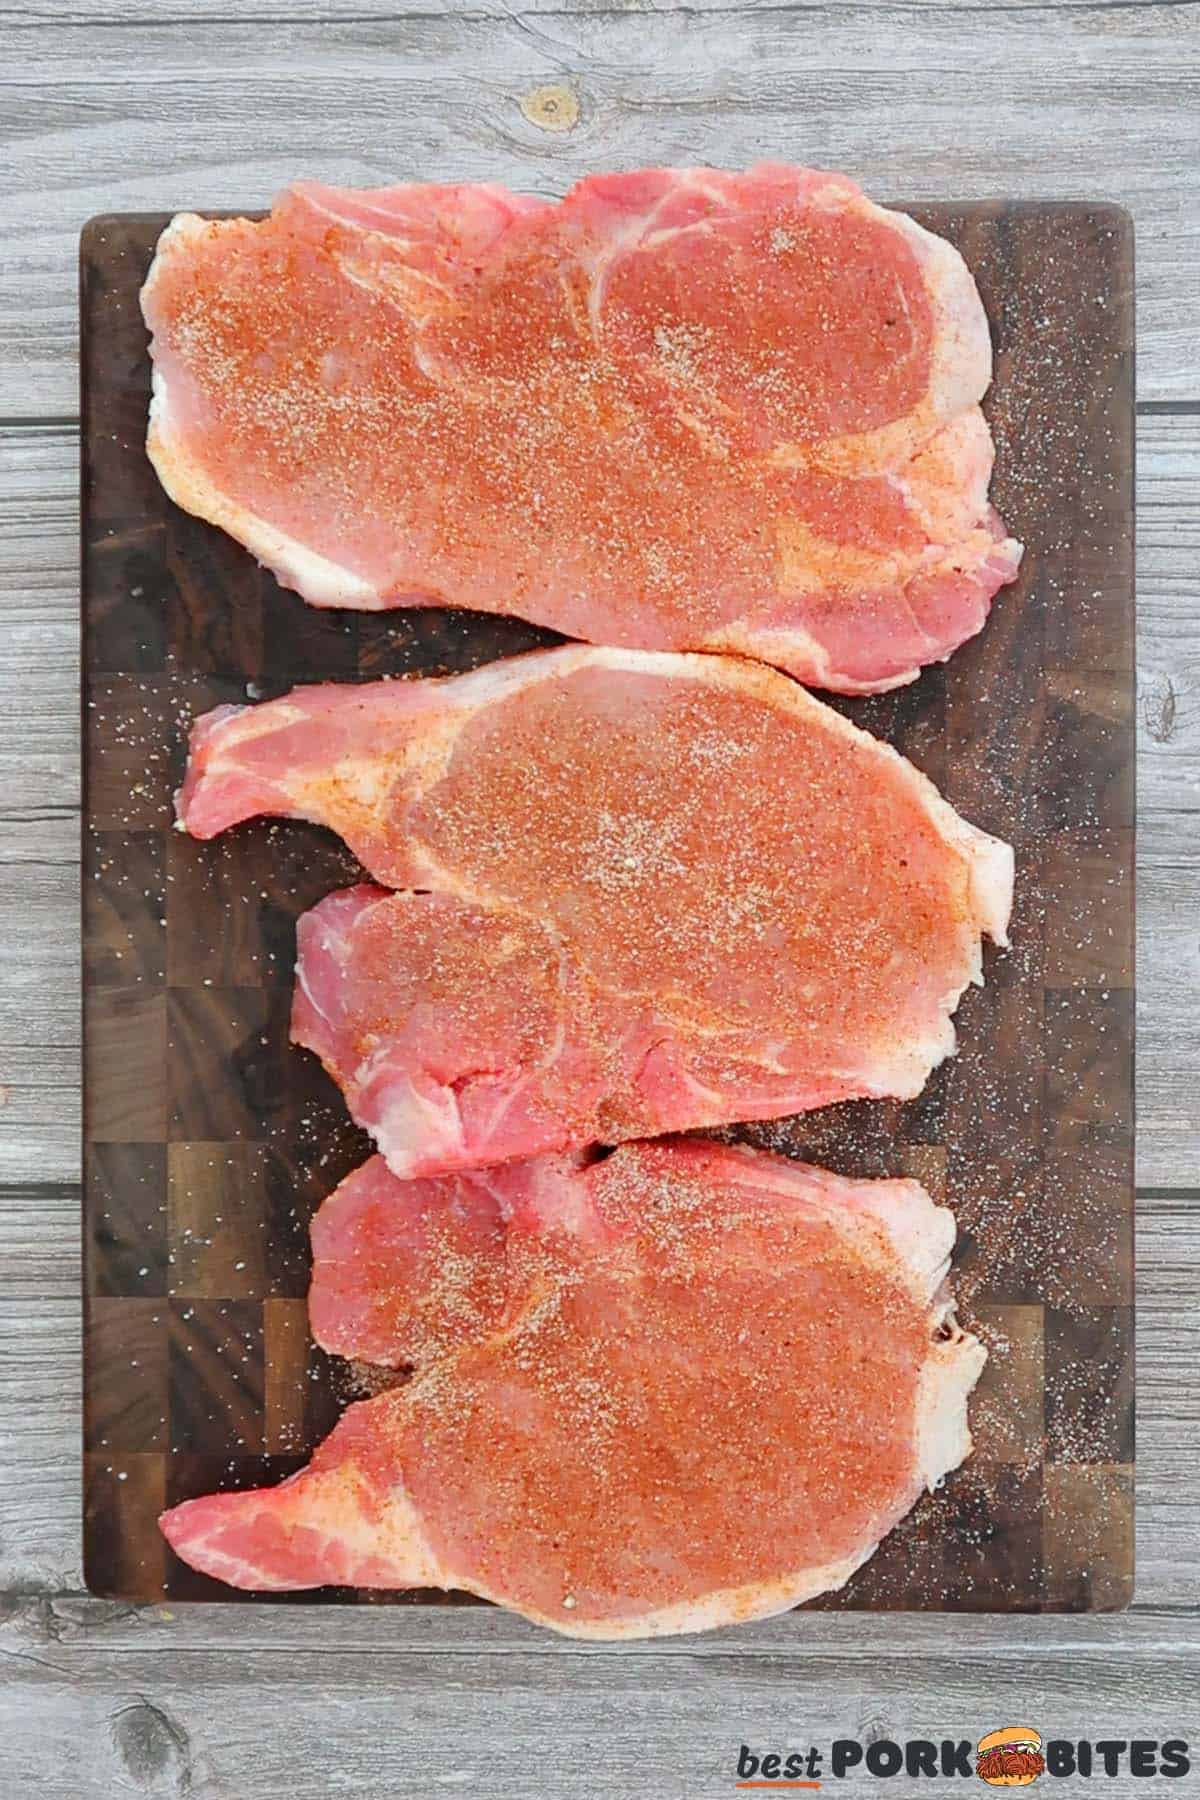 seasoning 3 pork chops on a cutting board